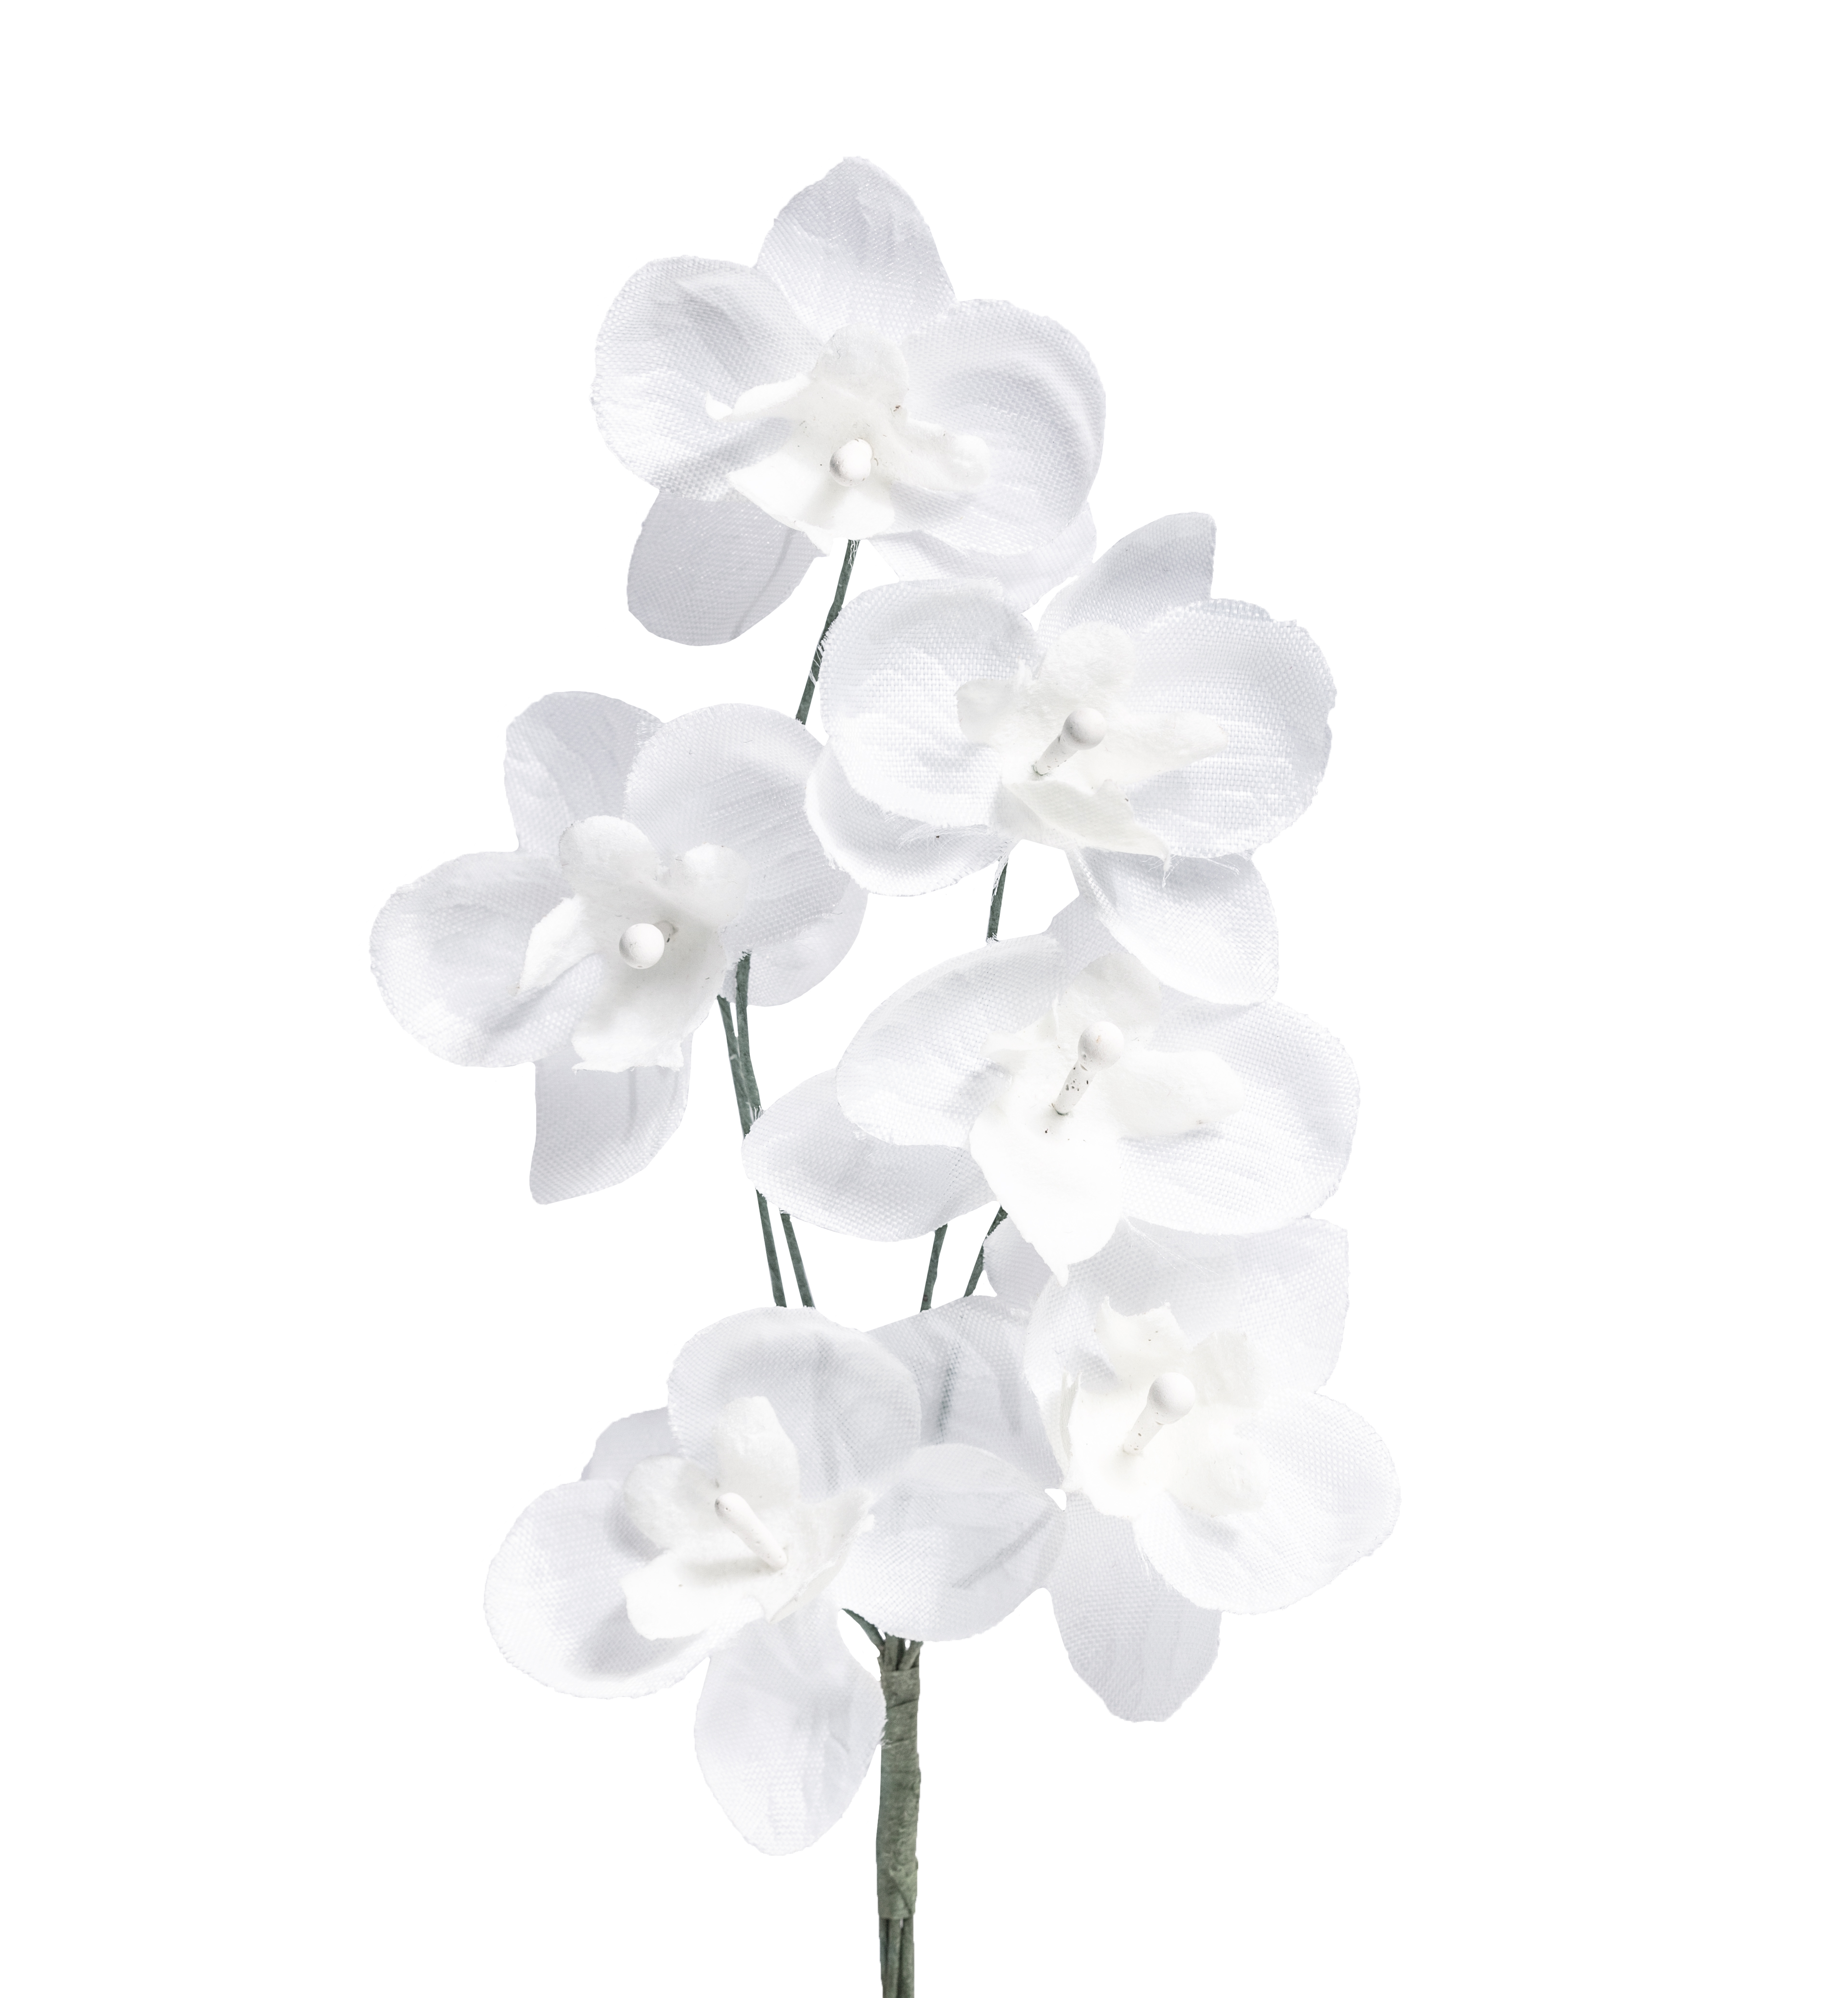 Miniorchidee weiß, 6 Blüten, 35 mm dm,